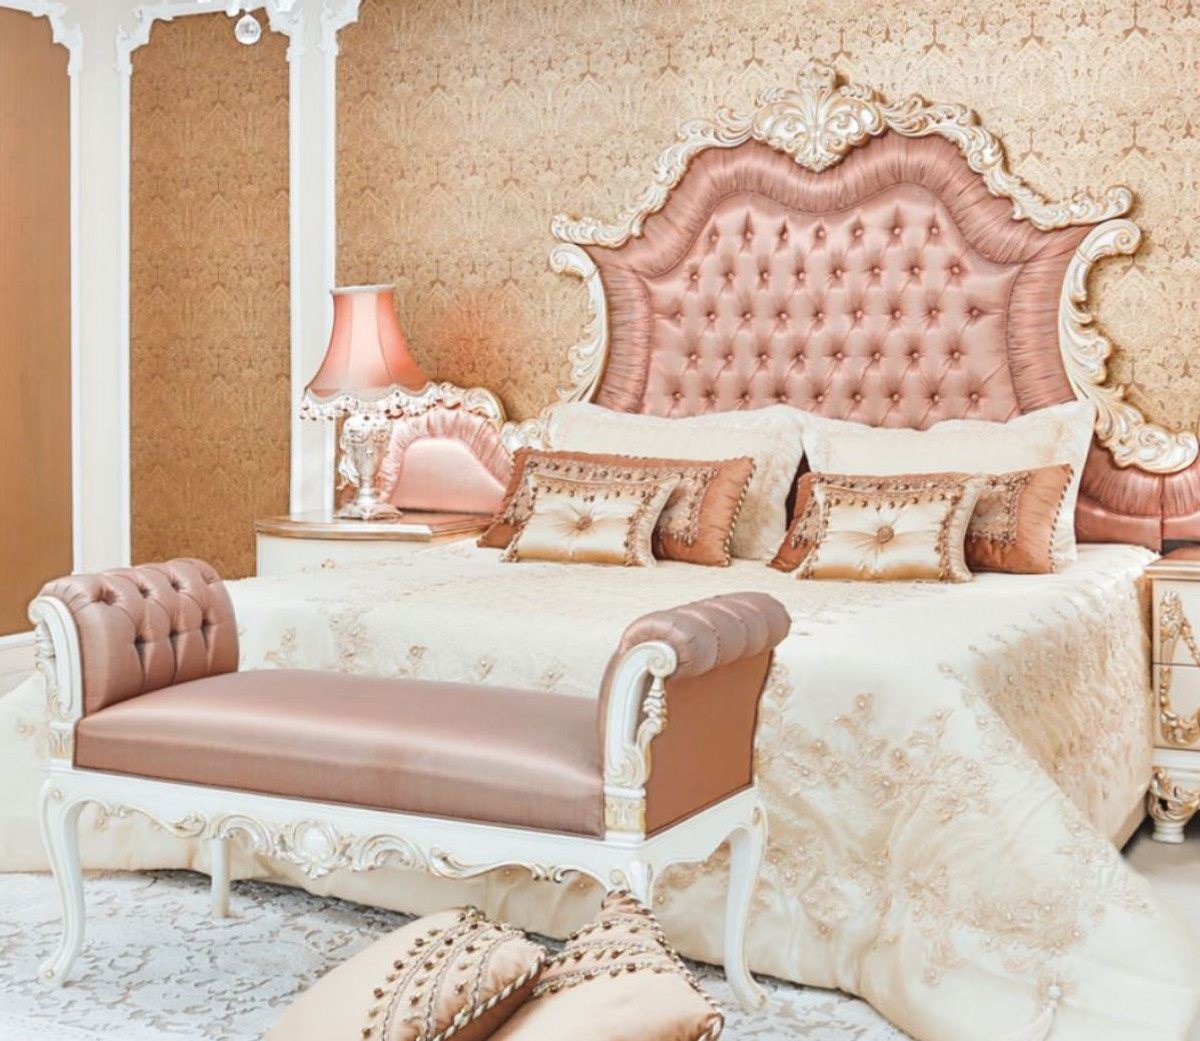 Casa Padrino Bett Doppelbett Rosa / Weiß / Creme / Kupferfarben 200 x 200 x H. 200 cm - Edles Massivholz Bett mit Kopfteil - Prunkvolle Schlafzimmer Möbel im Barockstil von Casa Padrino